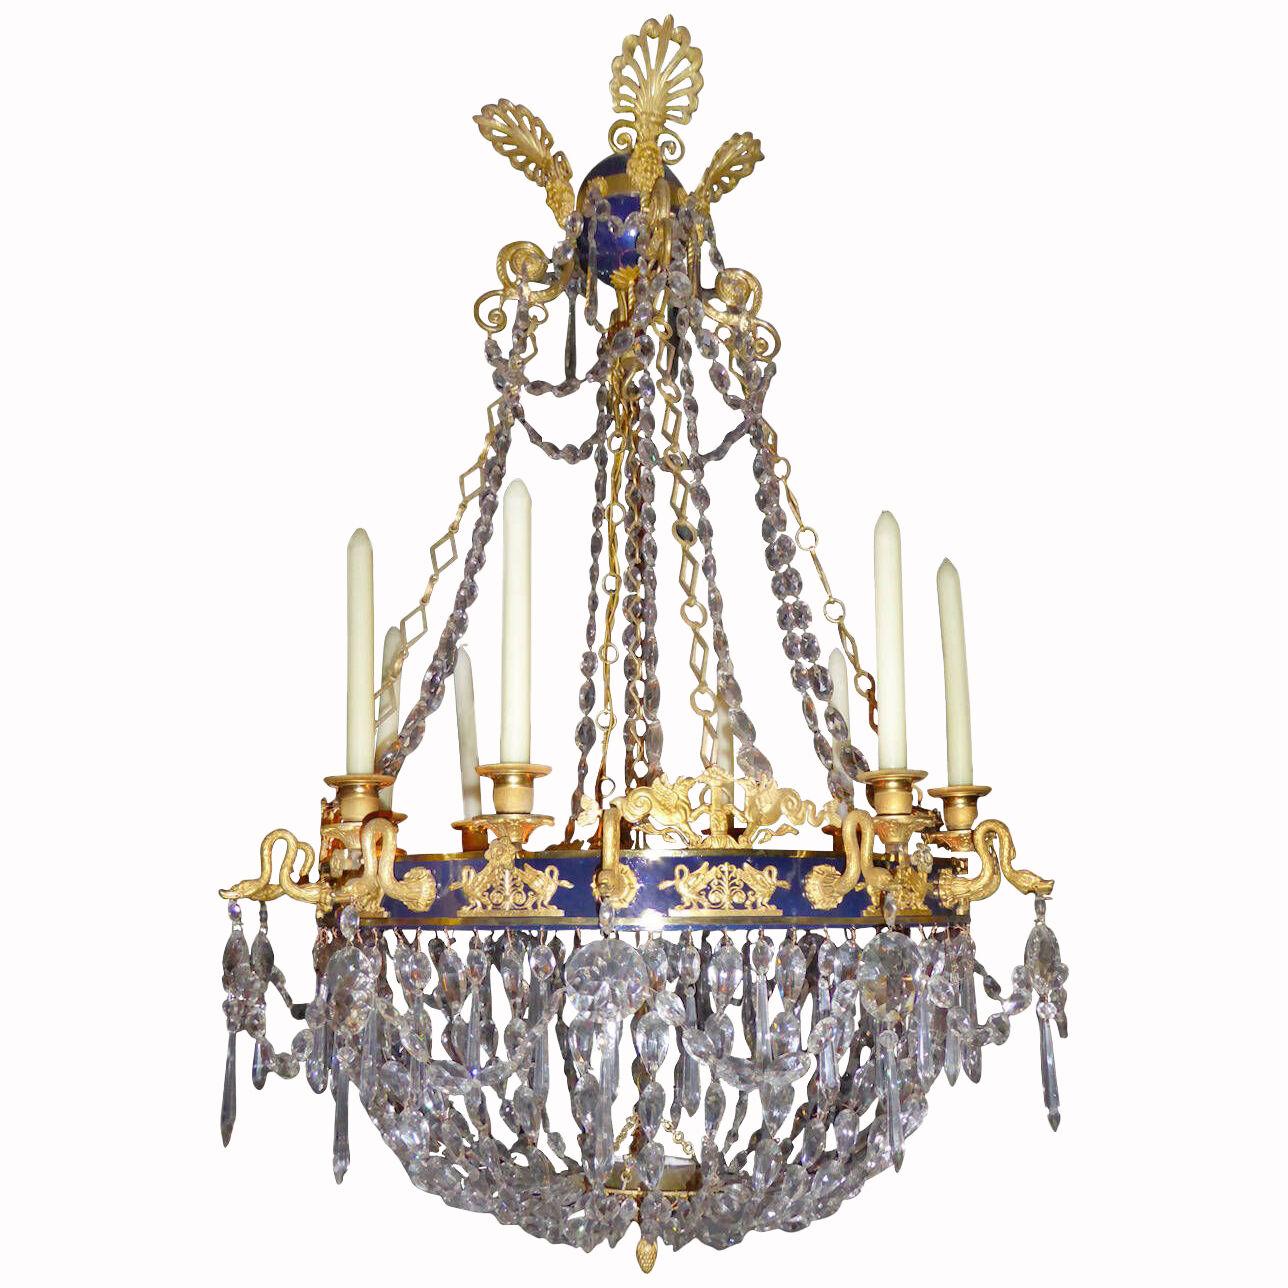 A Russian chandelier